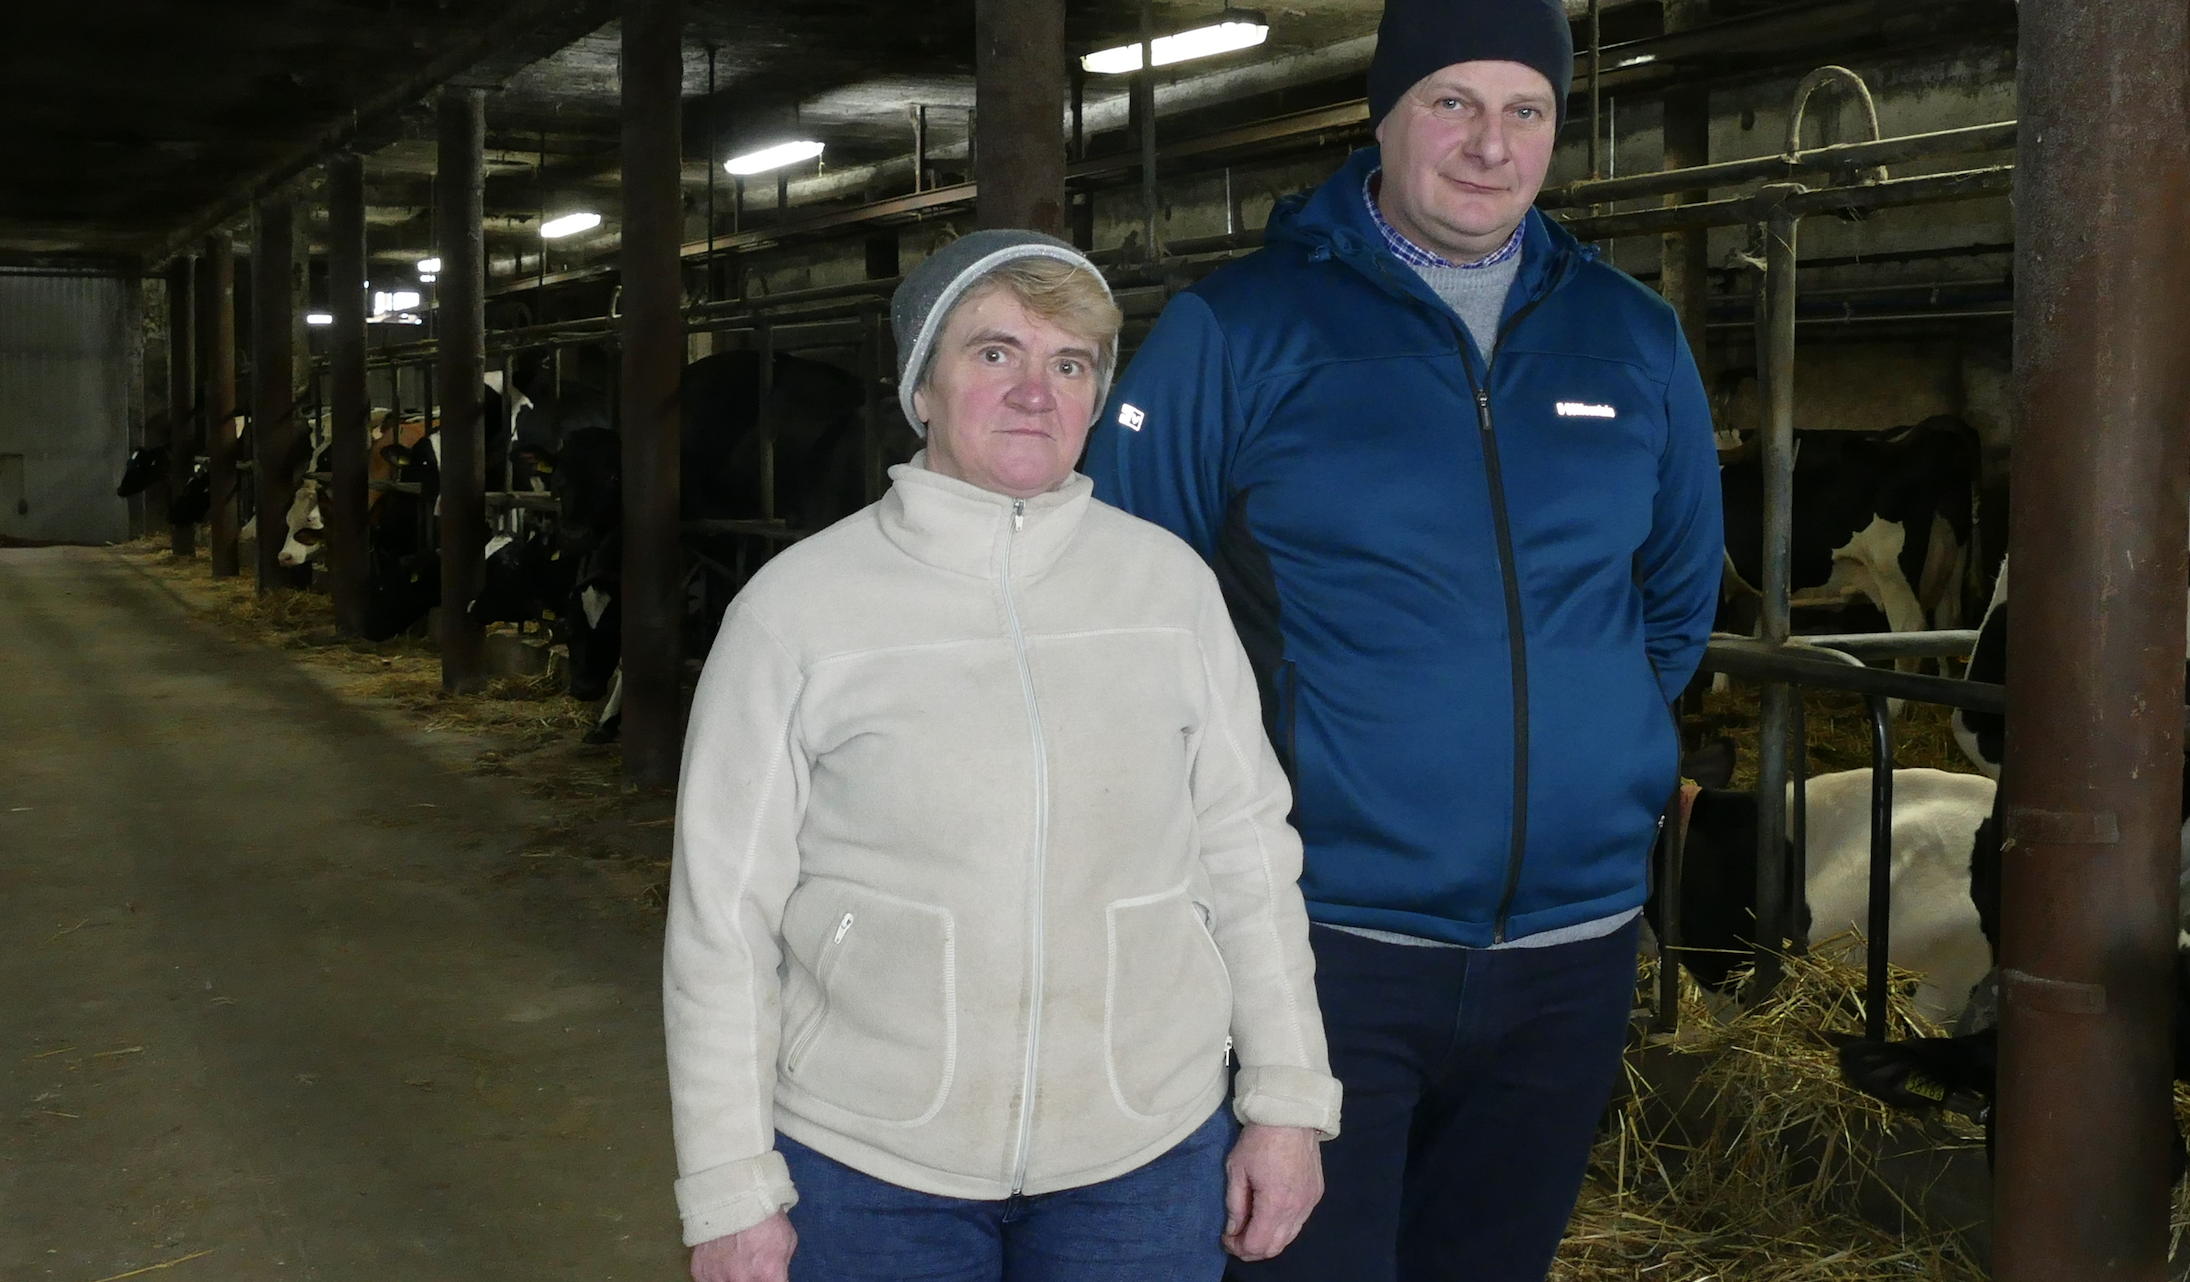 Wanda i Sławomir Jaczewscy prowadzą gospodarstwo w miejscowości Jarnice, w gminie Liw (powiat węgrowski). Jego powierzchnia liczy 70 ha, z czego 40 jest dzierżawione. 20 ha zajmują użytki zielone, pod kukurydzę zaplanowano w tym roku 25 ha, a pozostałe areał obsiewany jest zbożami. Hodowcy są dostawcami GK Polmlek, do której sprzedają około 40 tysięcy litrów mleka miesięcznie.